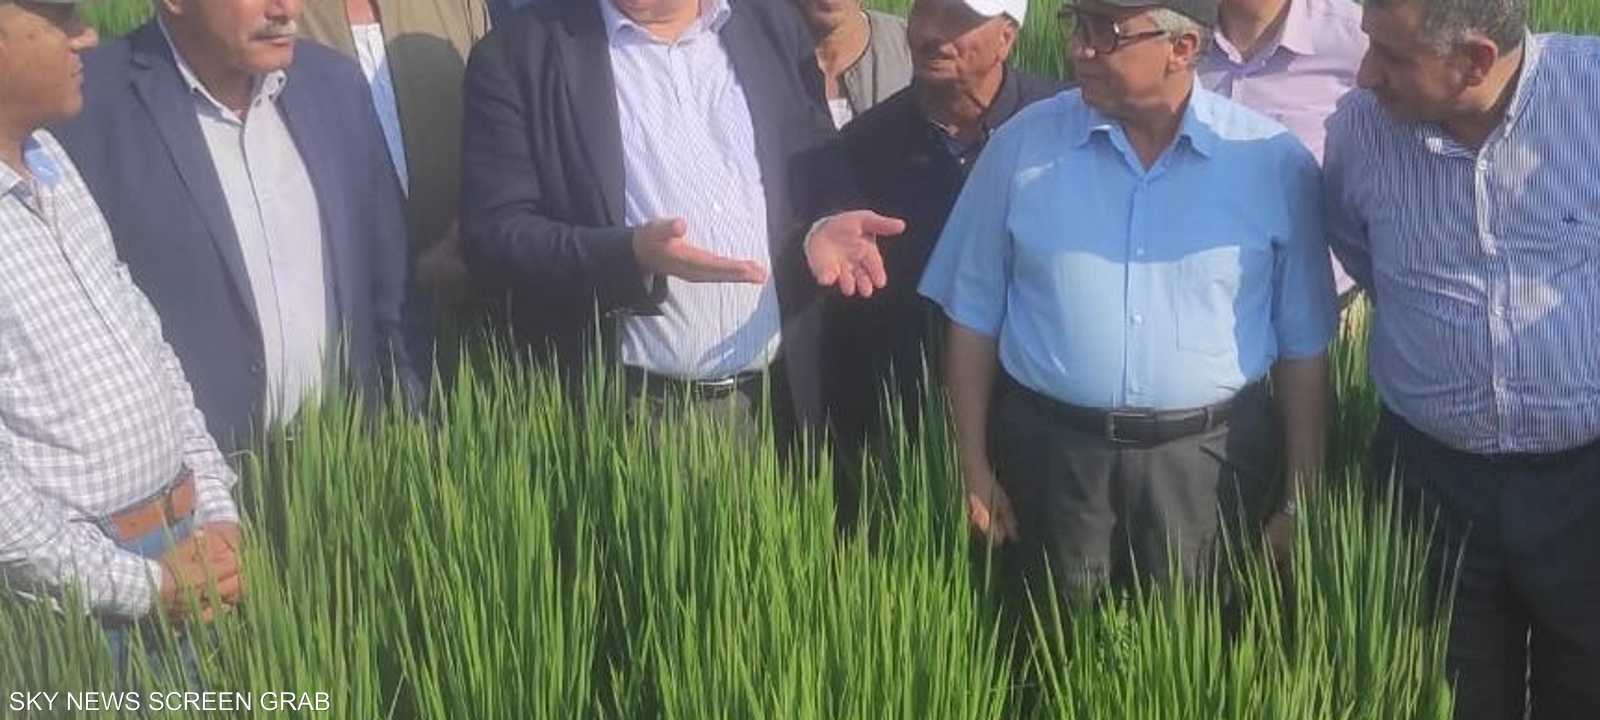 وزير الزراعة المصري يتفقد حقل محصول الأرز الجديد